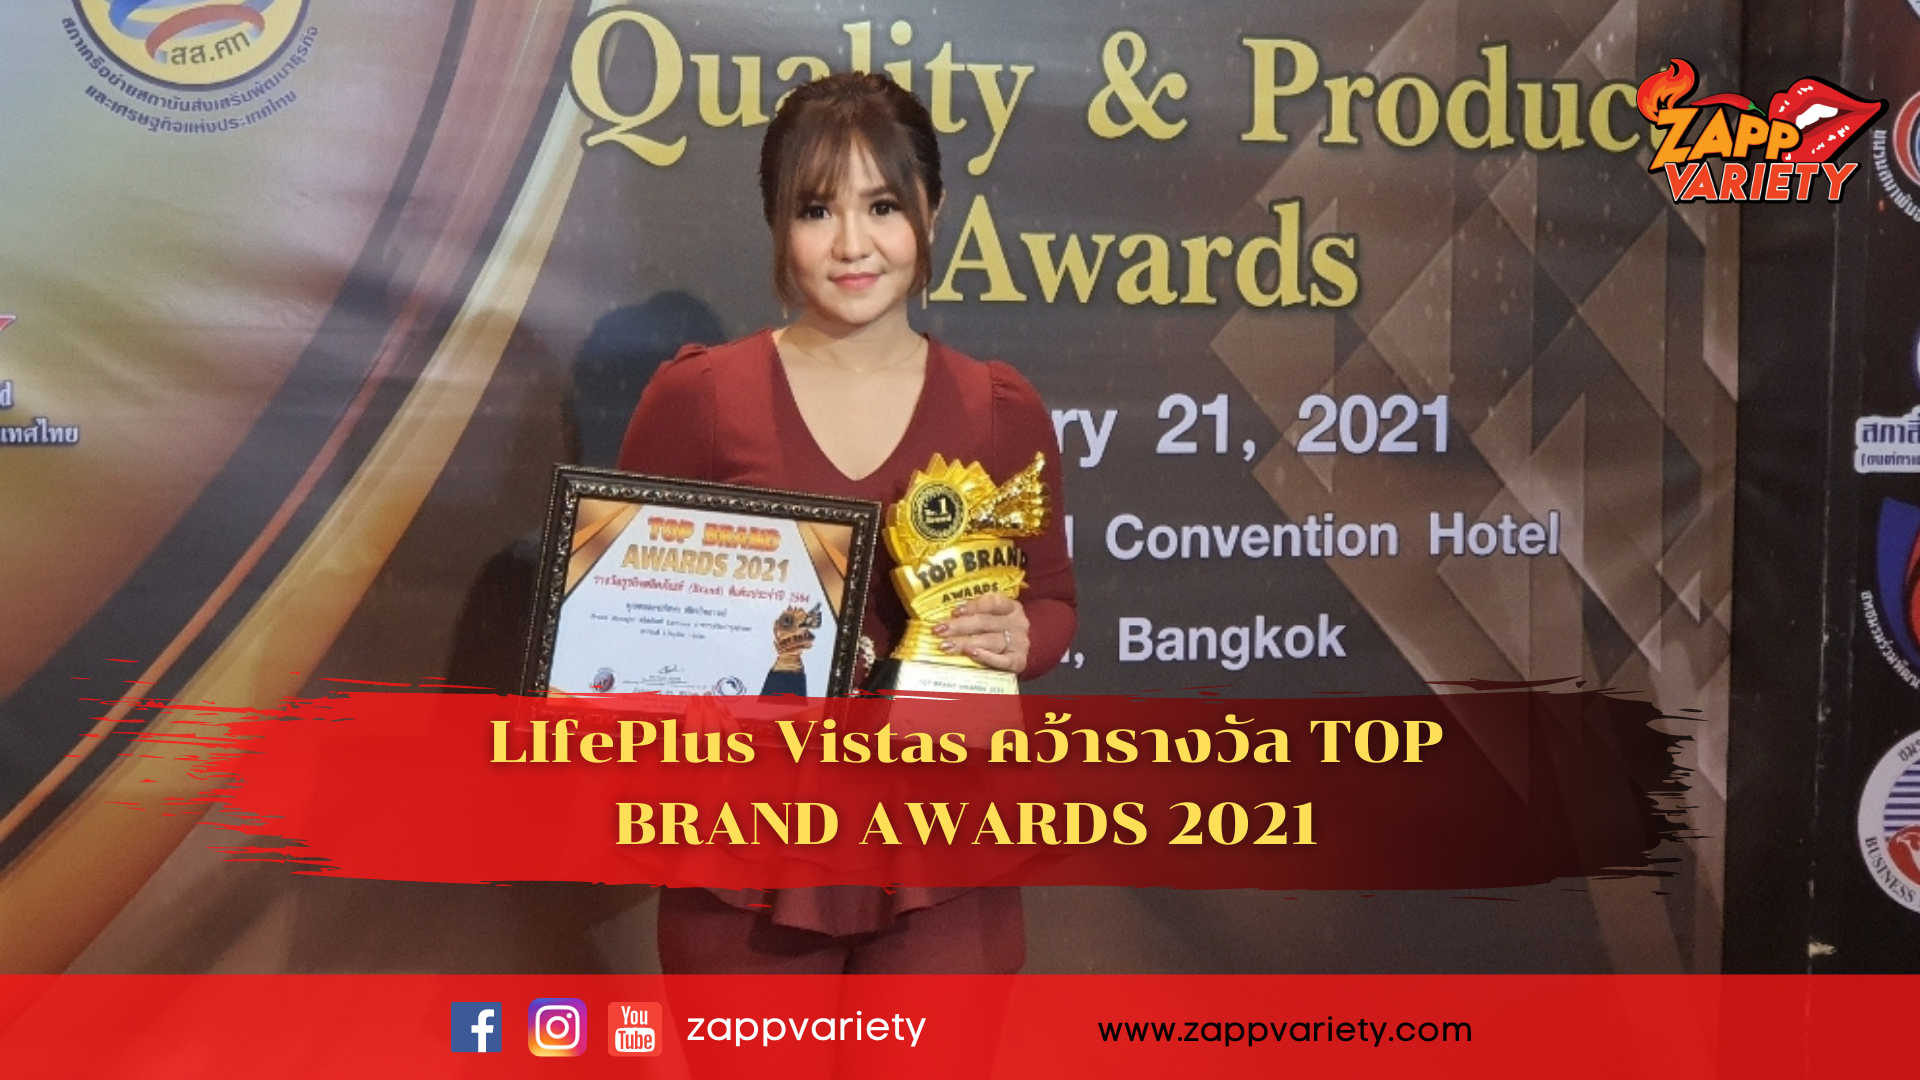 ที่สุด!ของผลิตภัณฑ์บำรุงสายตา แบรนด์ Lifeplus Vistas การันตีด้วยรางวัลแห่งปี TOP BRAND AWARDS 2021 